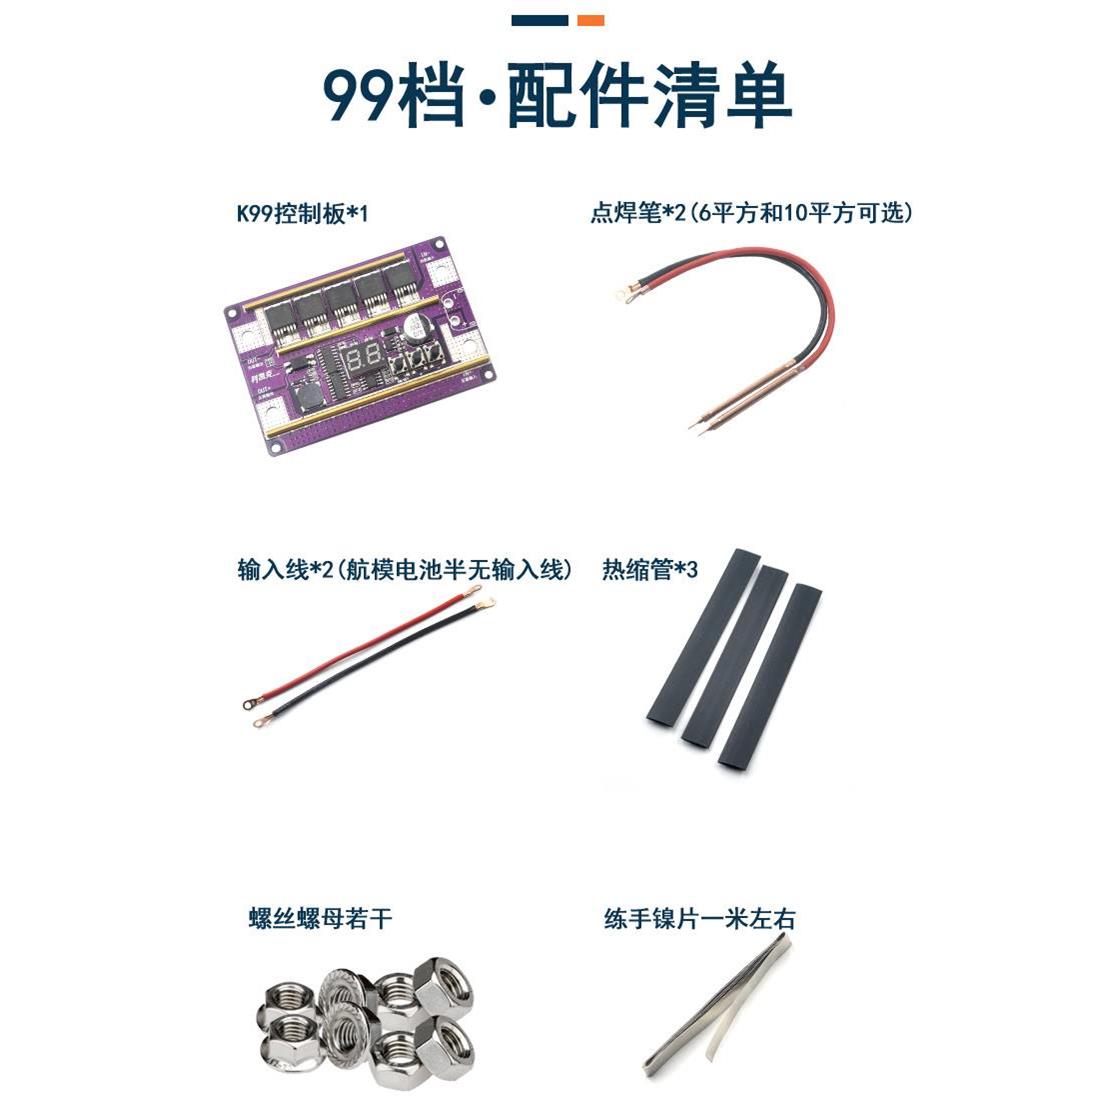 12小型自动点焊全套配件 18650锂电池点焊机笔控制主板碰焊机